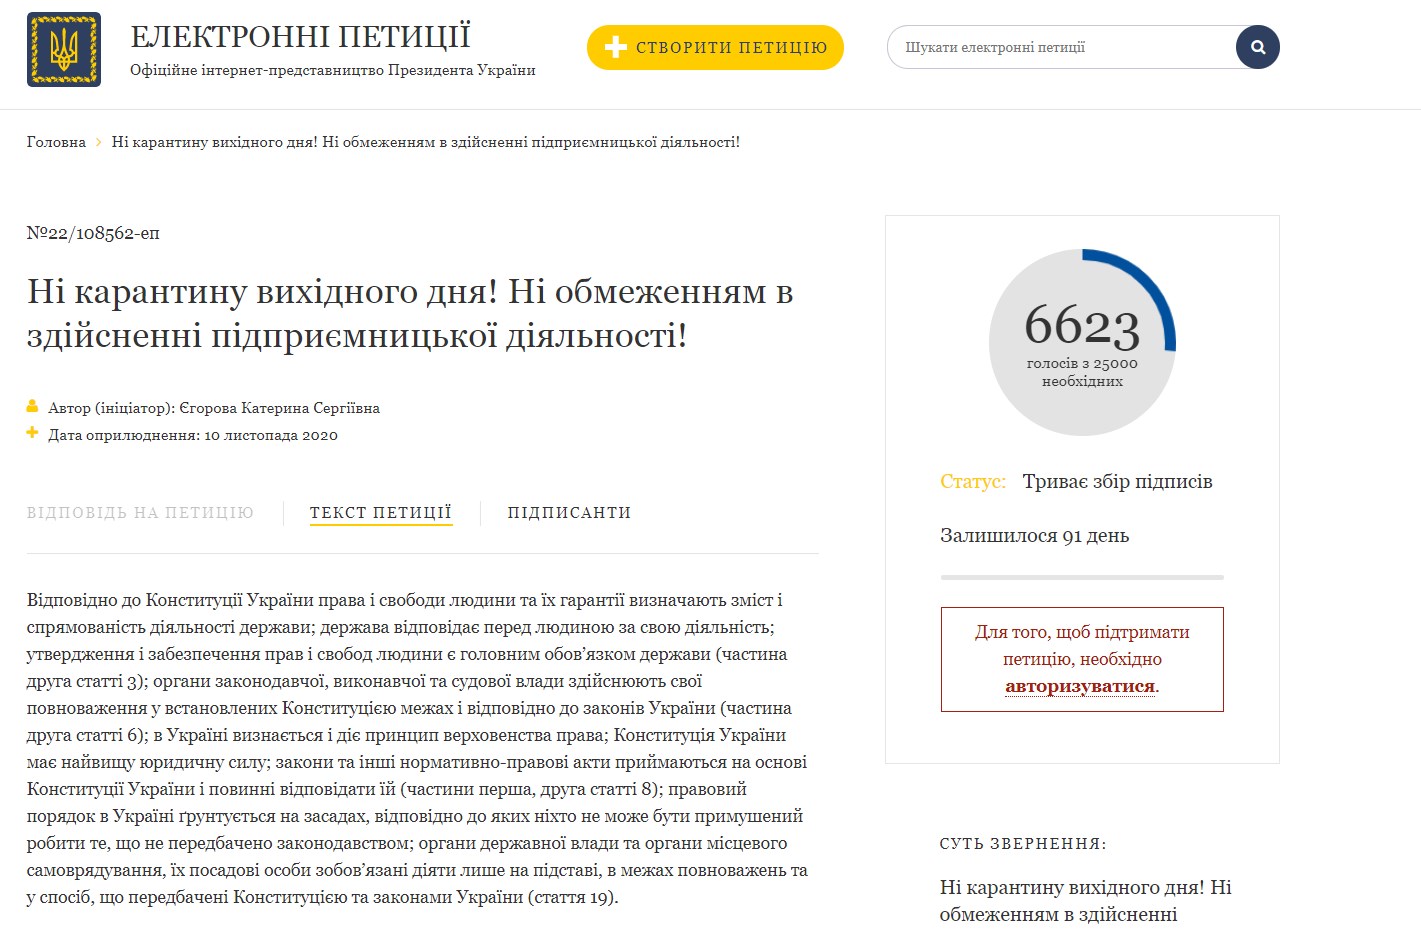 Бизнесмены требуют отменить карантин|Новости Украины